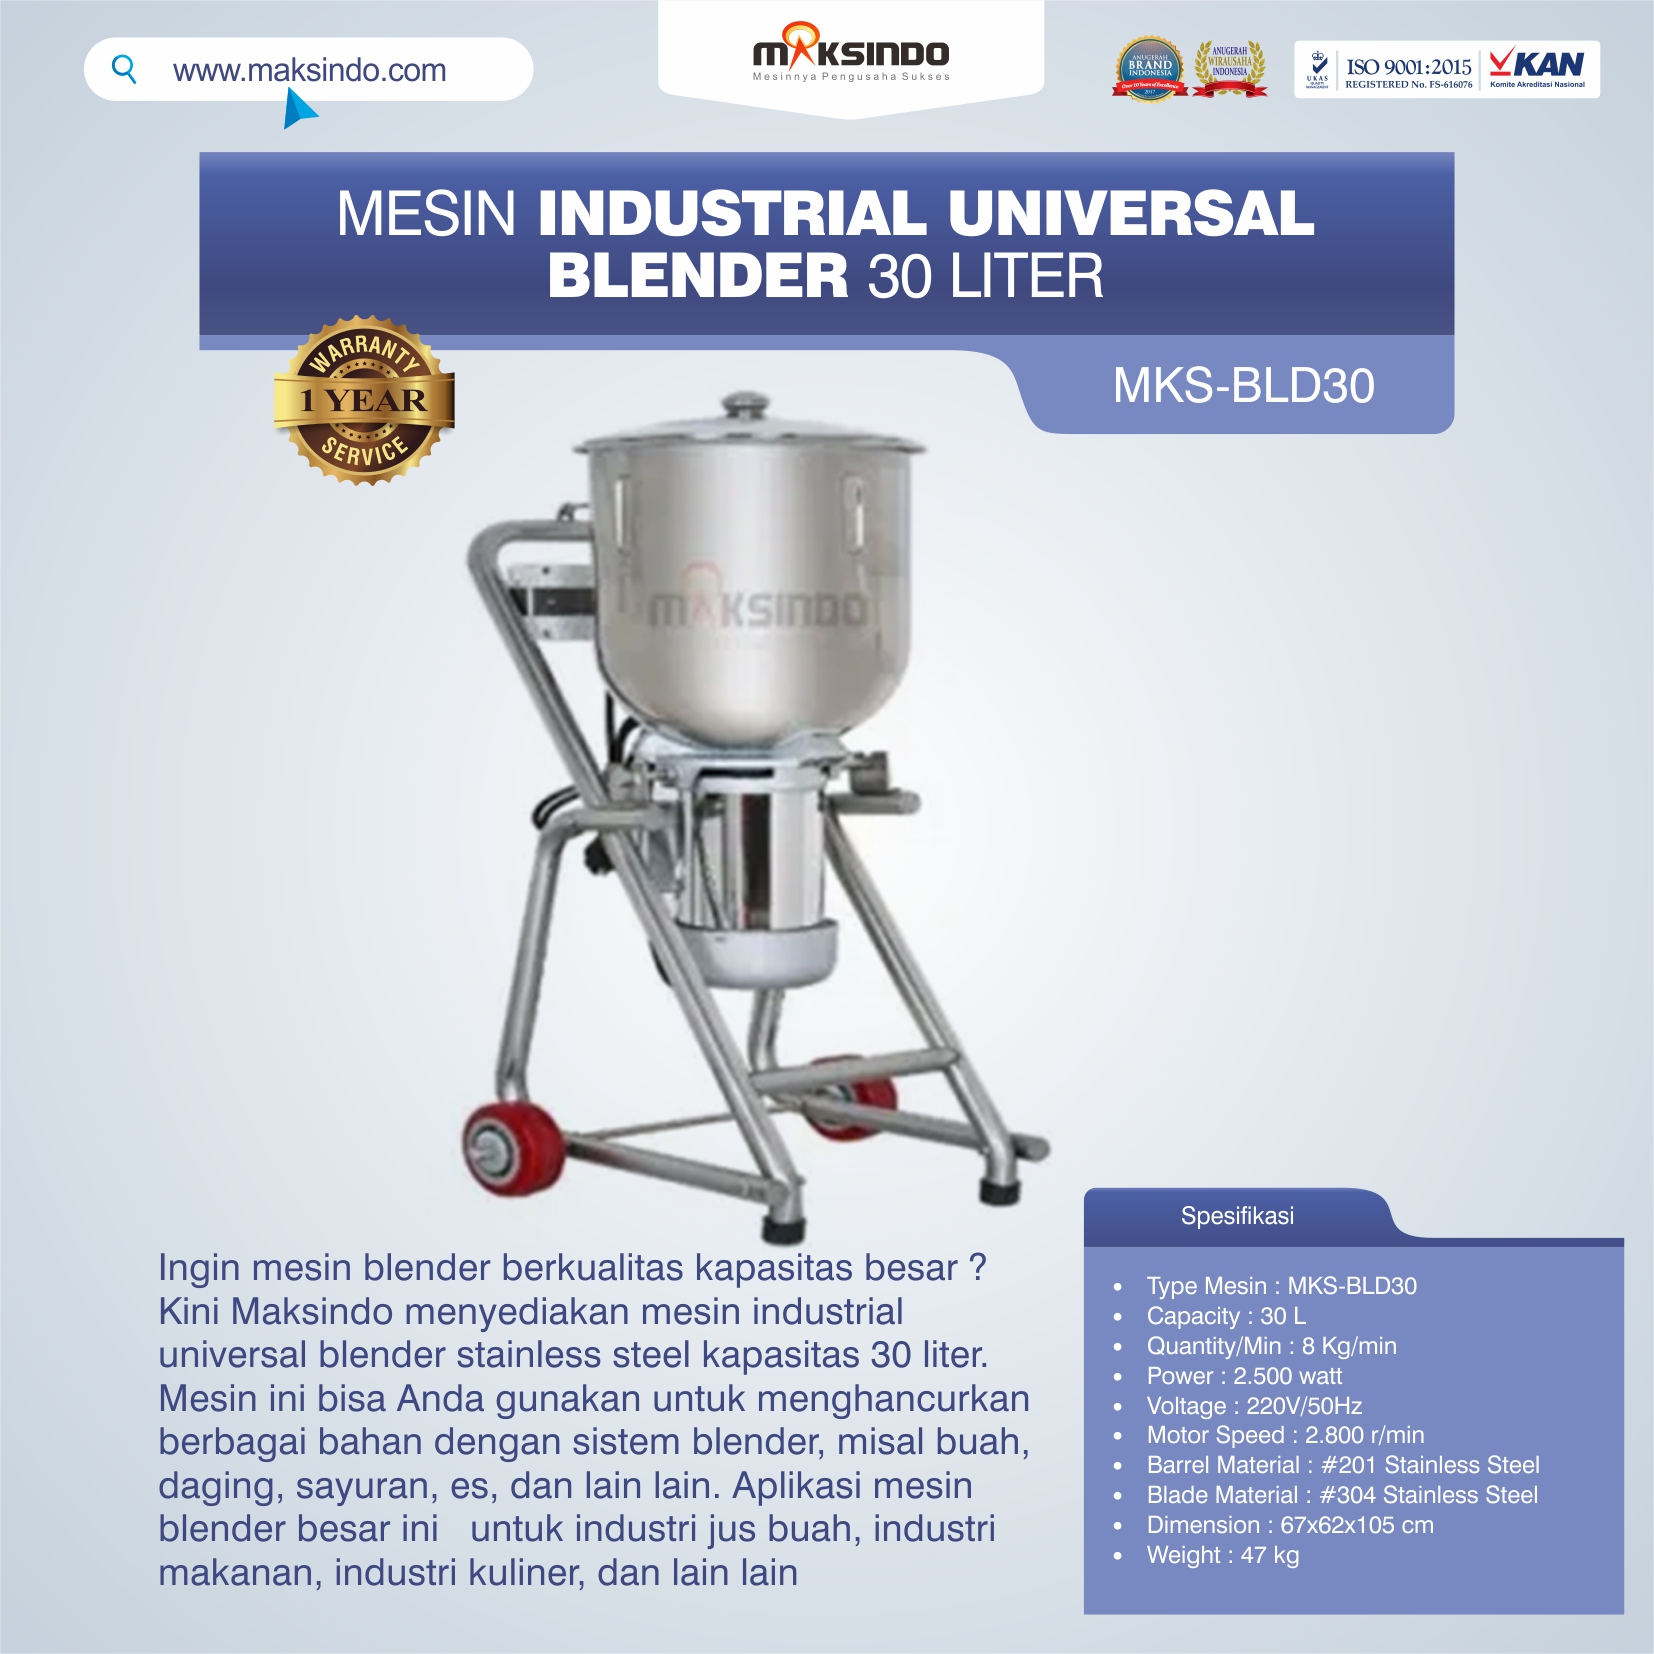 Jual Industrial Universal Blender 30 Liter MKS-BLD30 di Tangerang